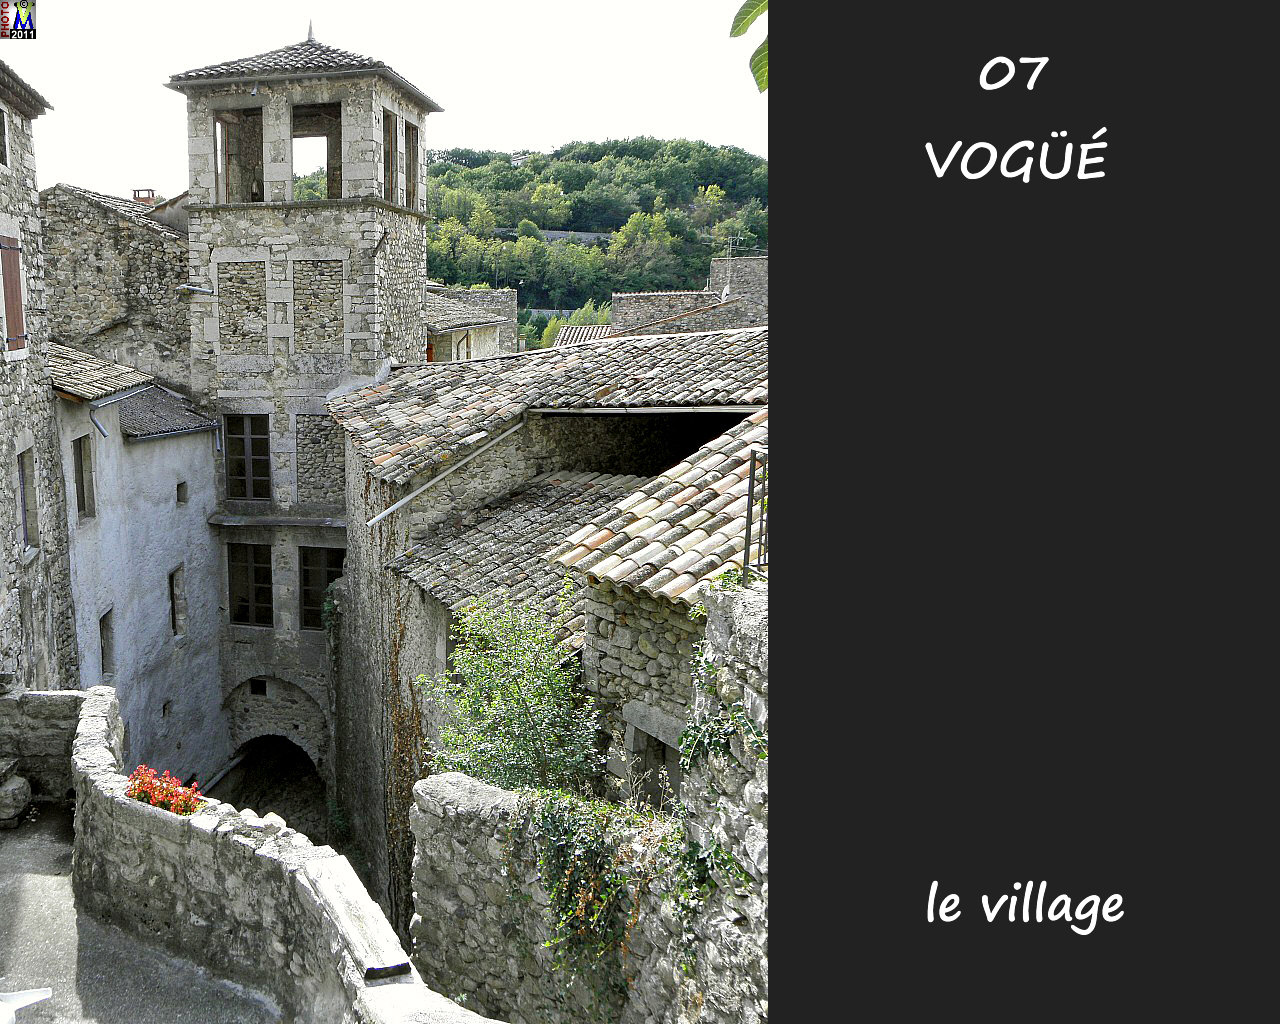 07VOGUE_village_152.jpg